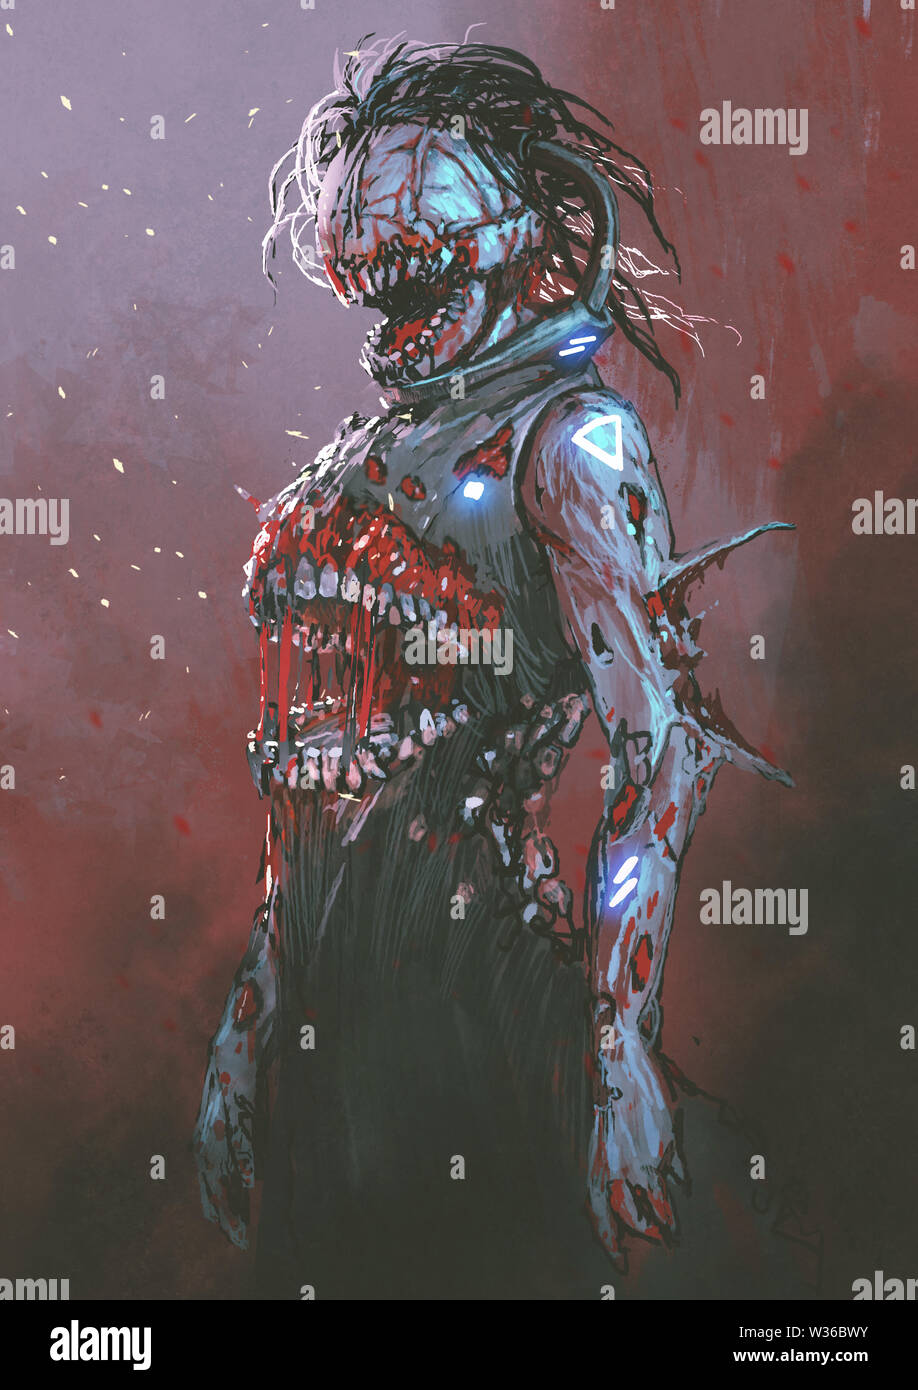 Creepy zombie con boca sangrienta en el medio del cuerpo, arte digital, Ilustración estilo de pintura Foto de stock